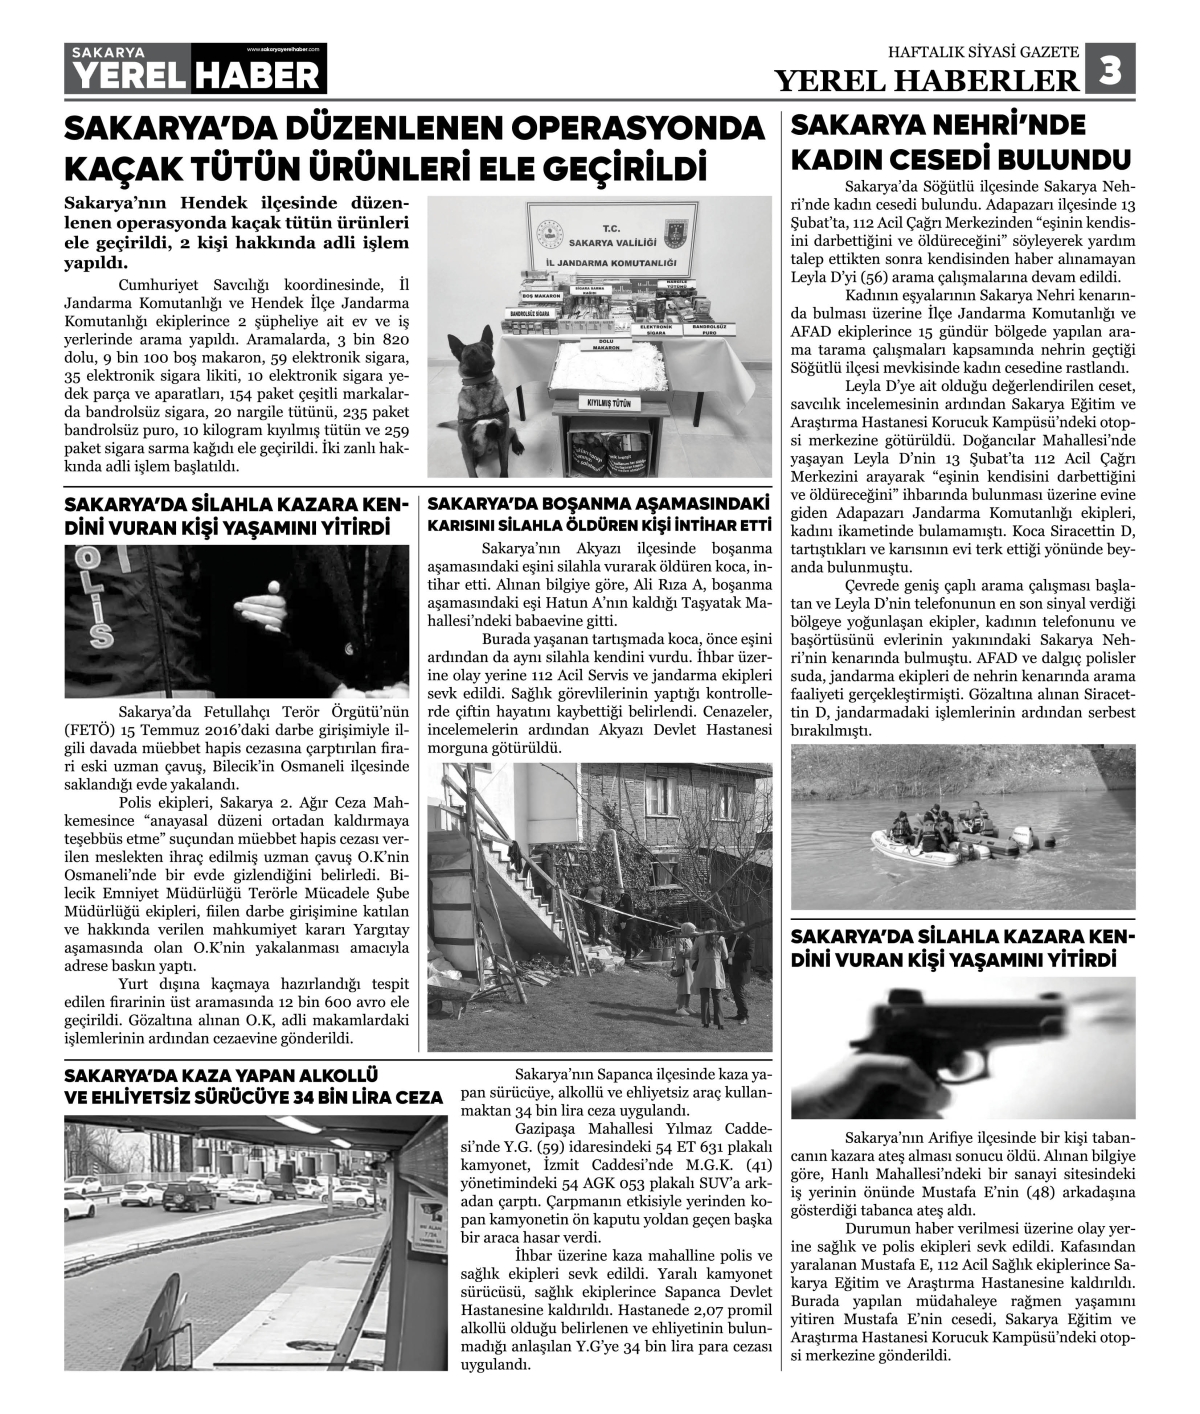 Sakarya Yerel Haber Gazetesi 44. Sayısı Çıktı